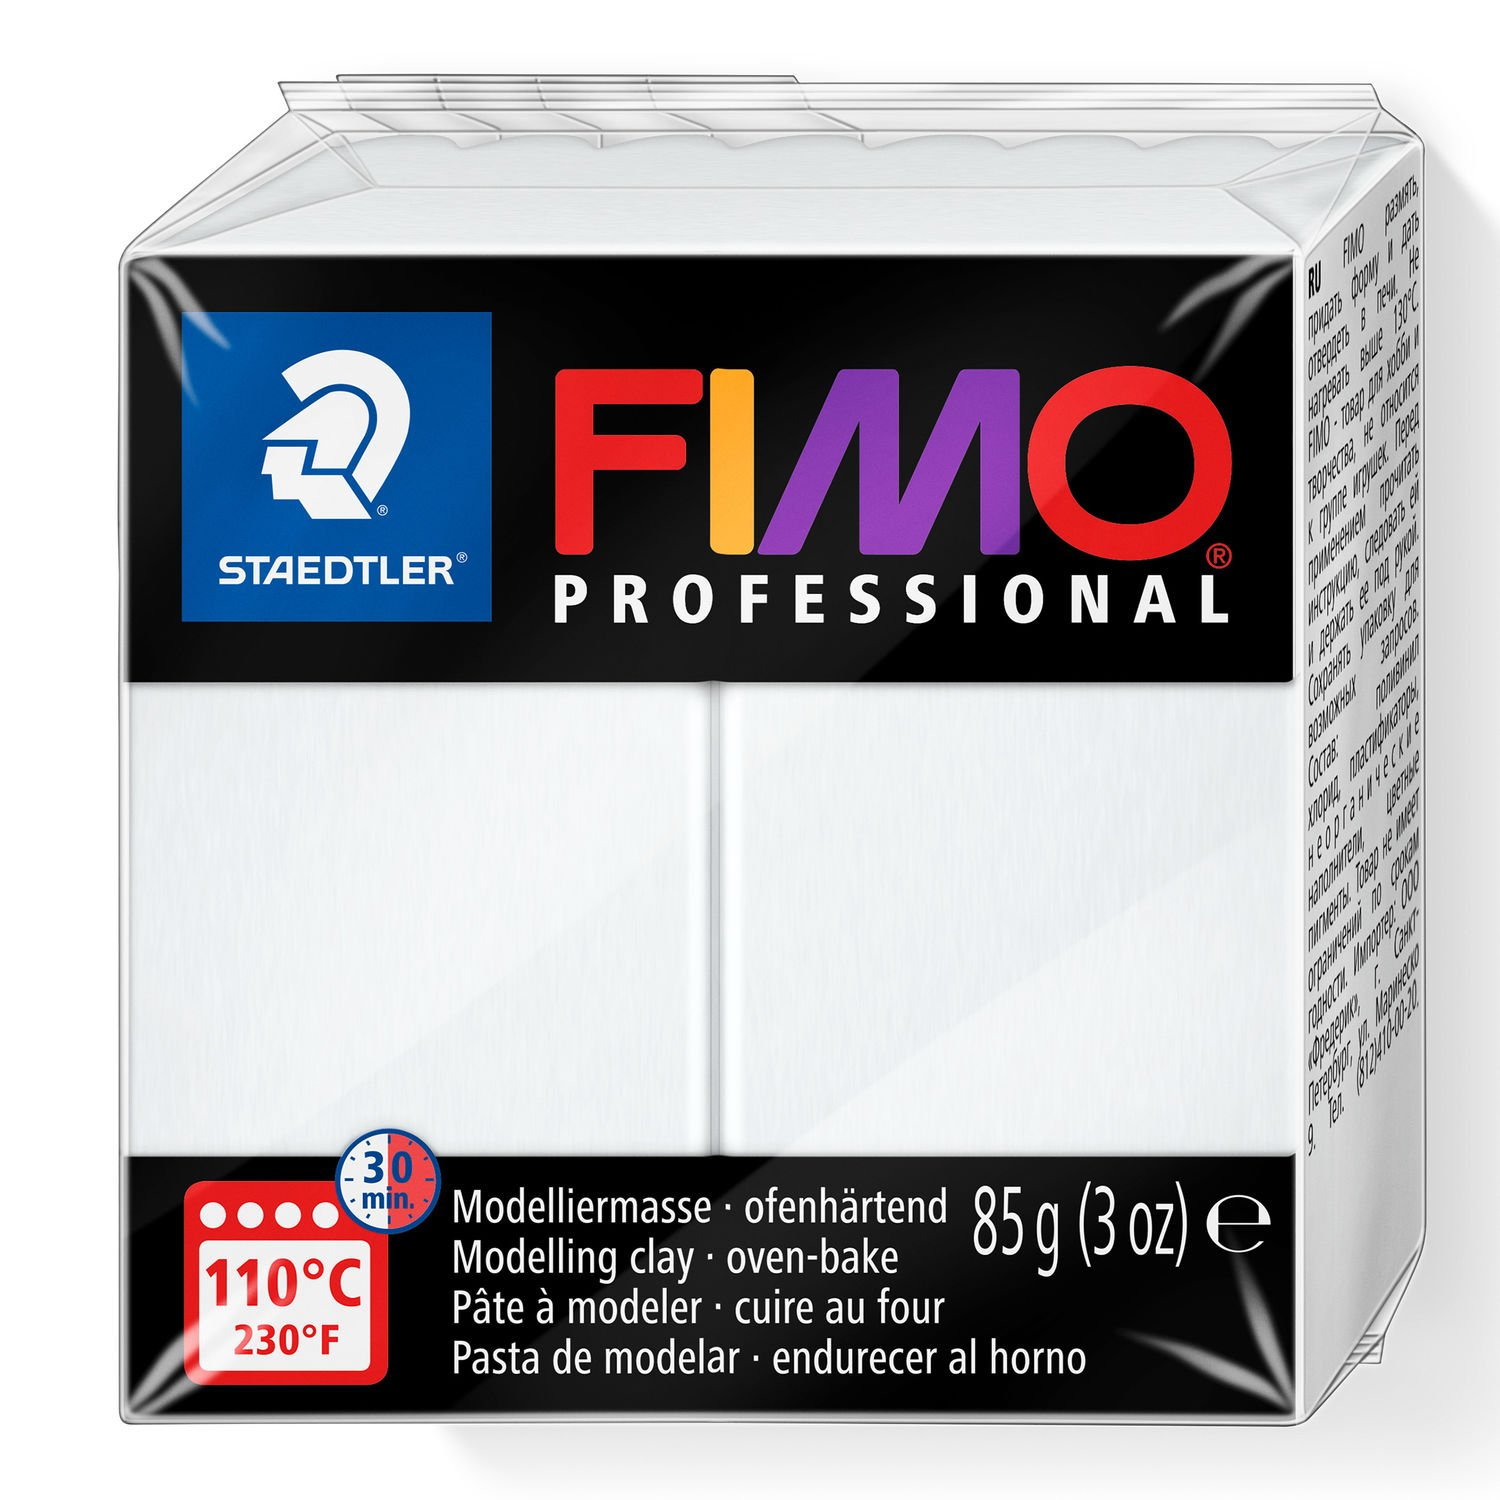 STAEDTLER FIMO 8004 - Modellierton - Weiß - Erwachsener - 1 Stück(e) - 1 Farben - 110 °C